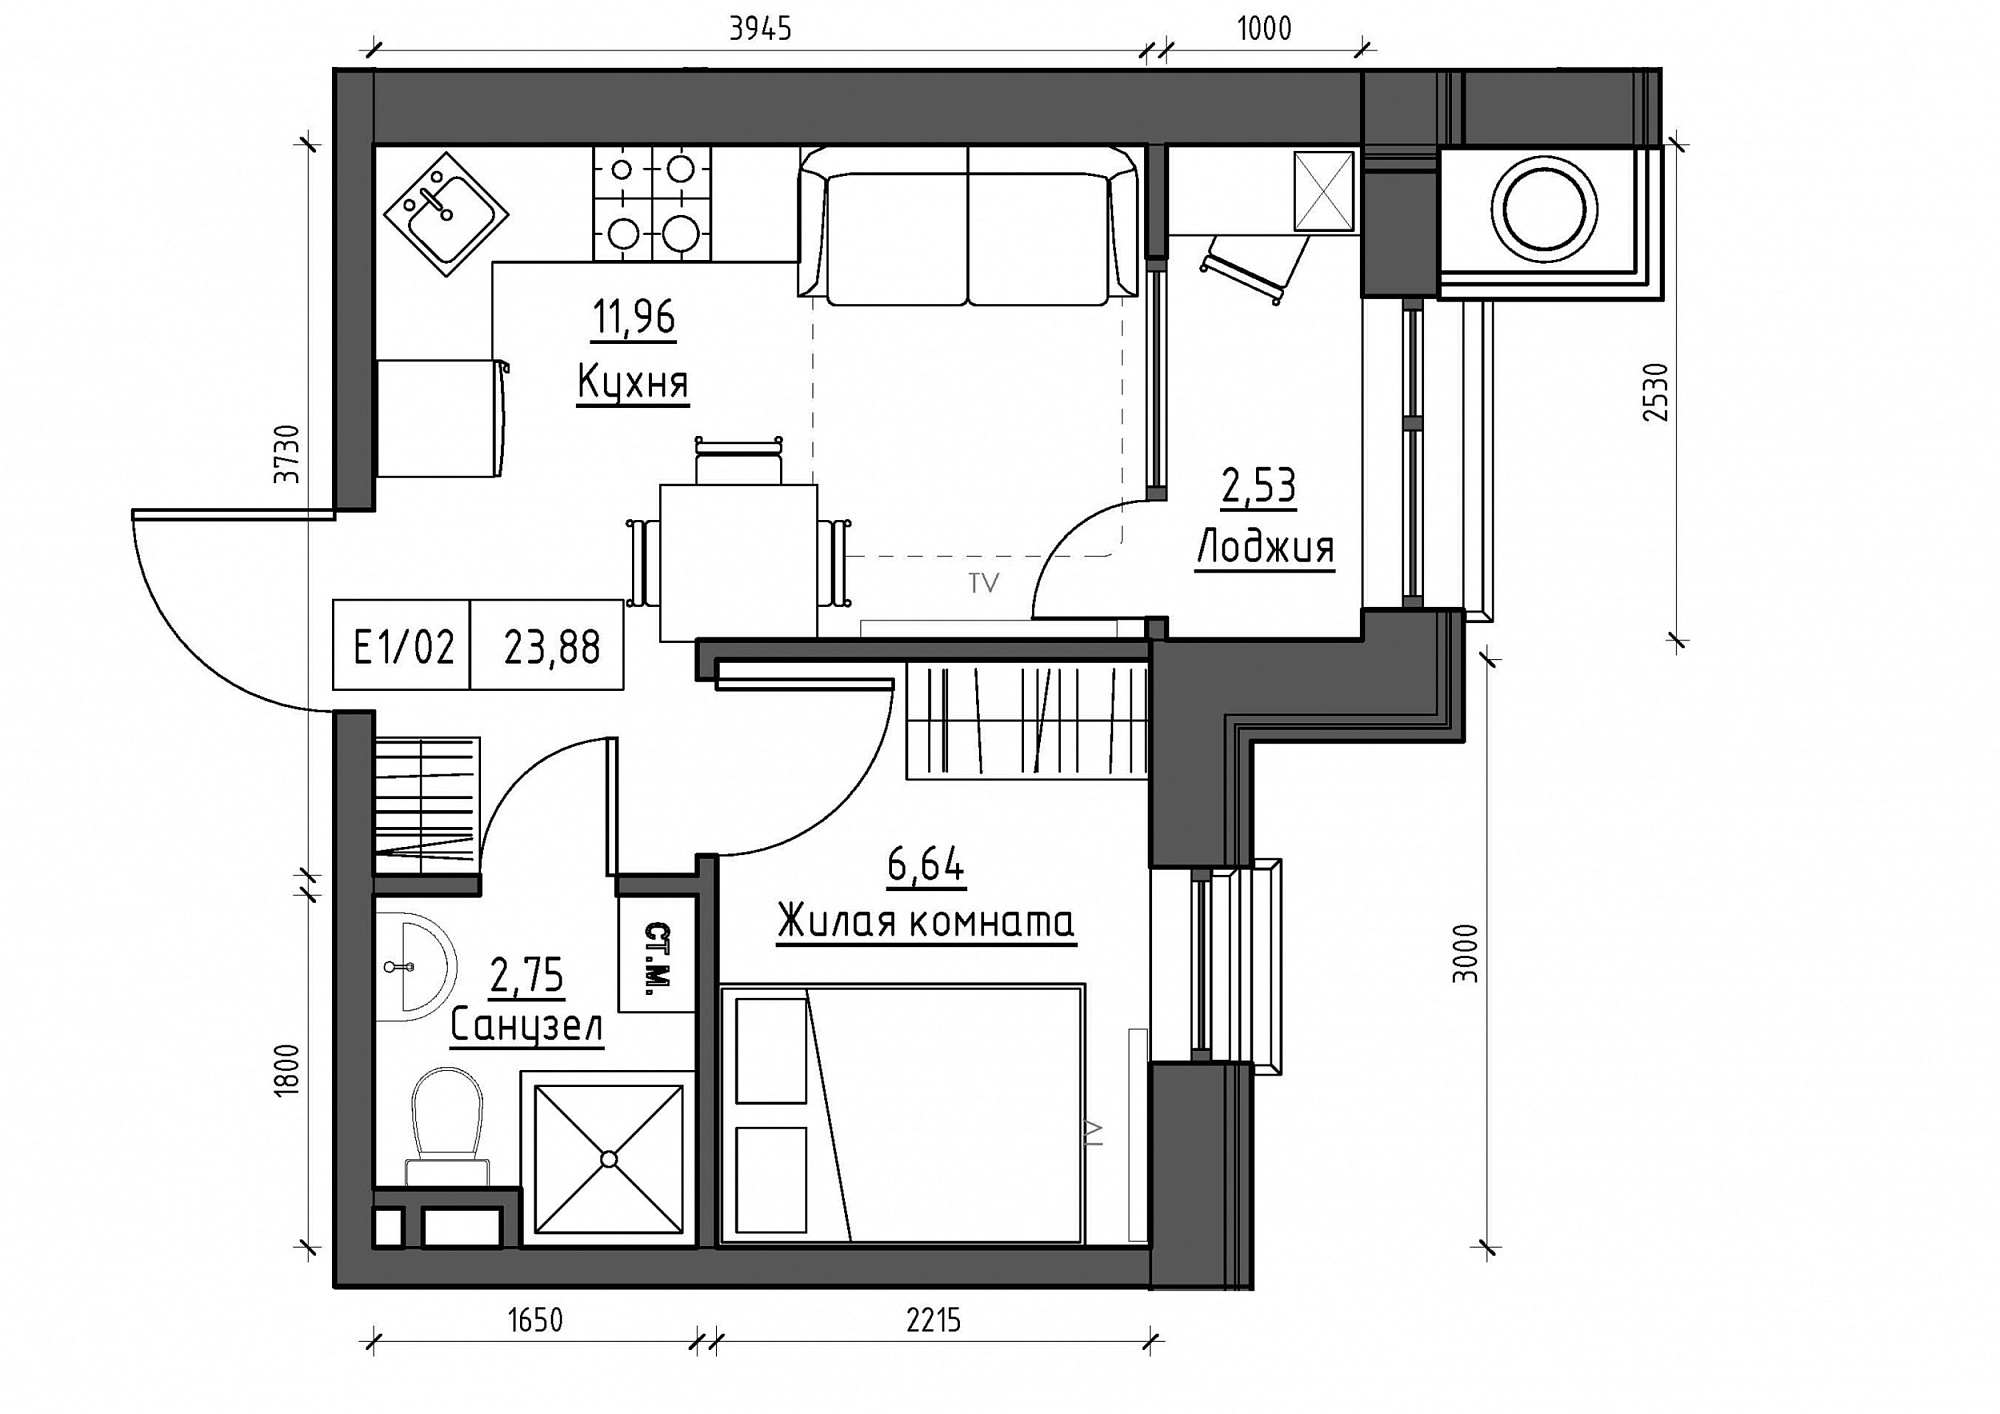 Планування 1-к квартира площею 23.88м2, KS-012-03/0015.